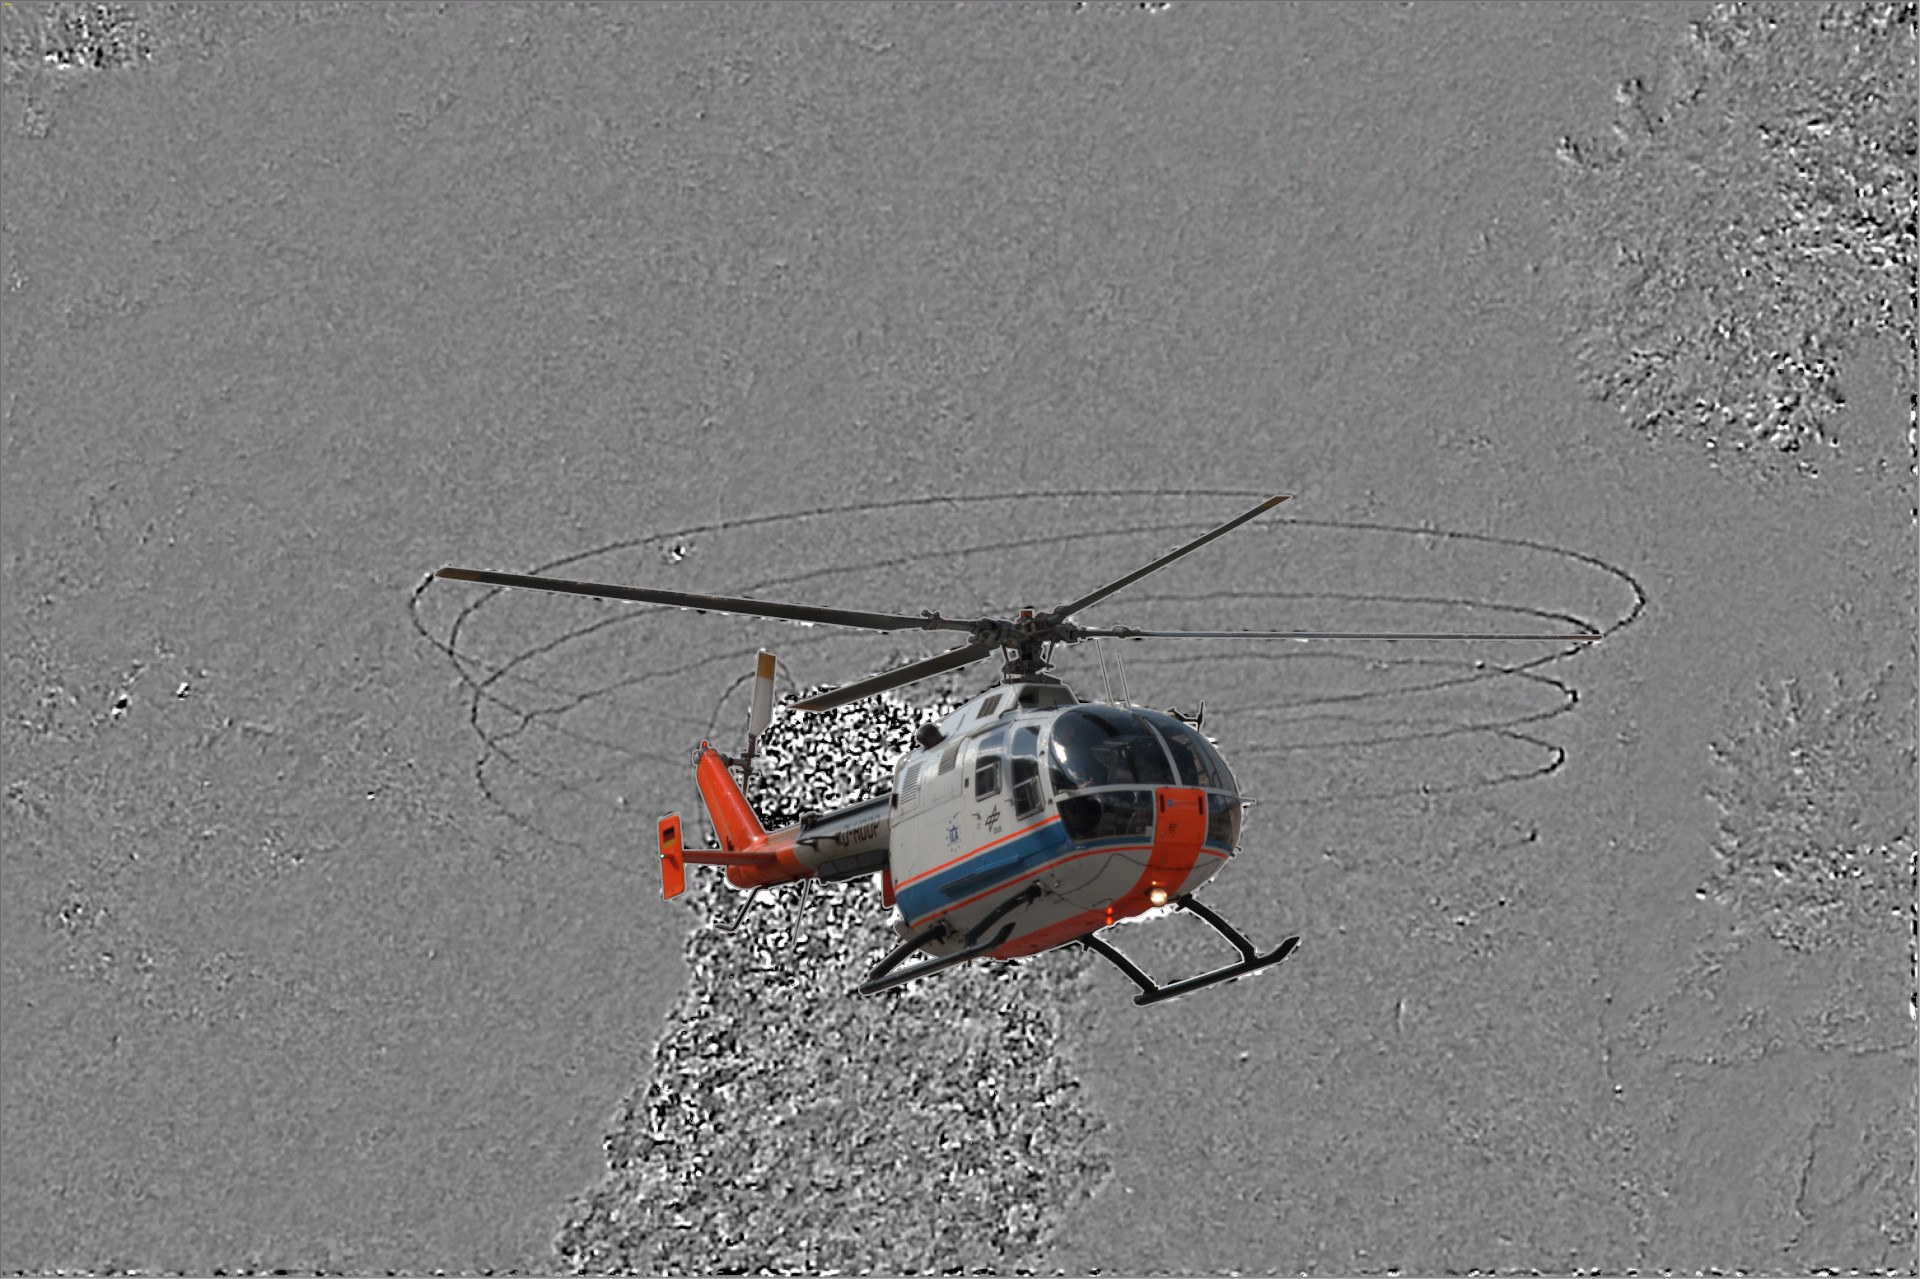 Background Oriented Schlieren Method (BOS) am DLR Helicopter